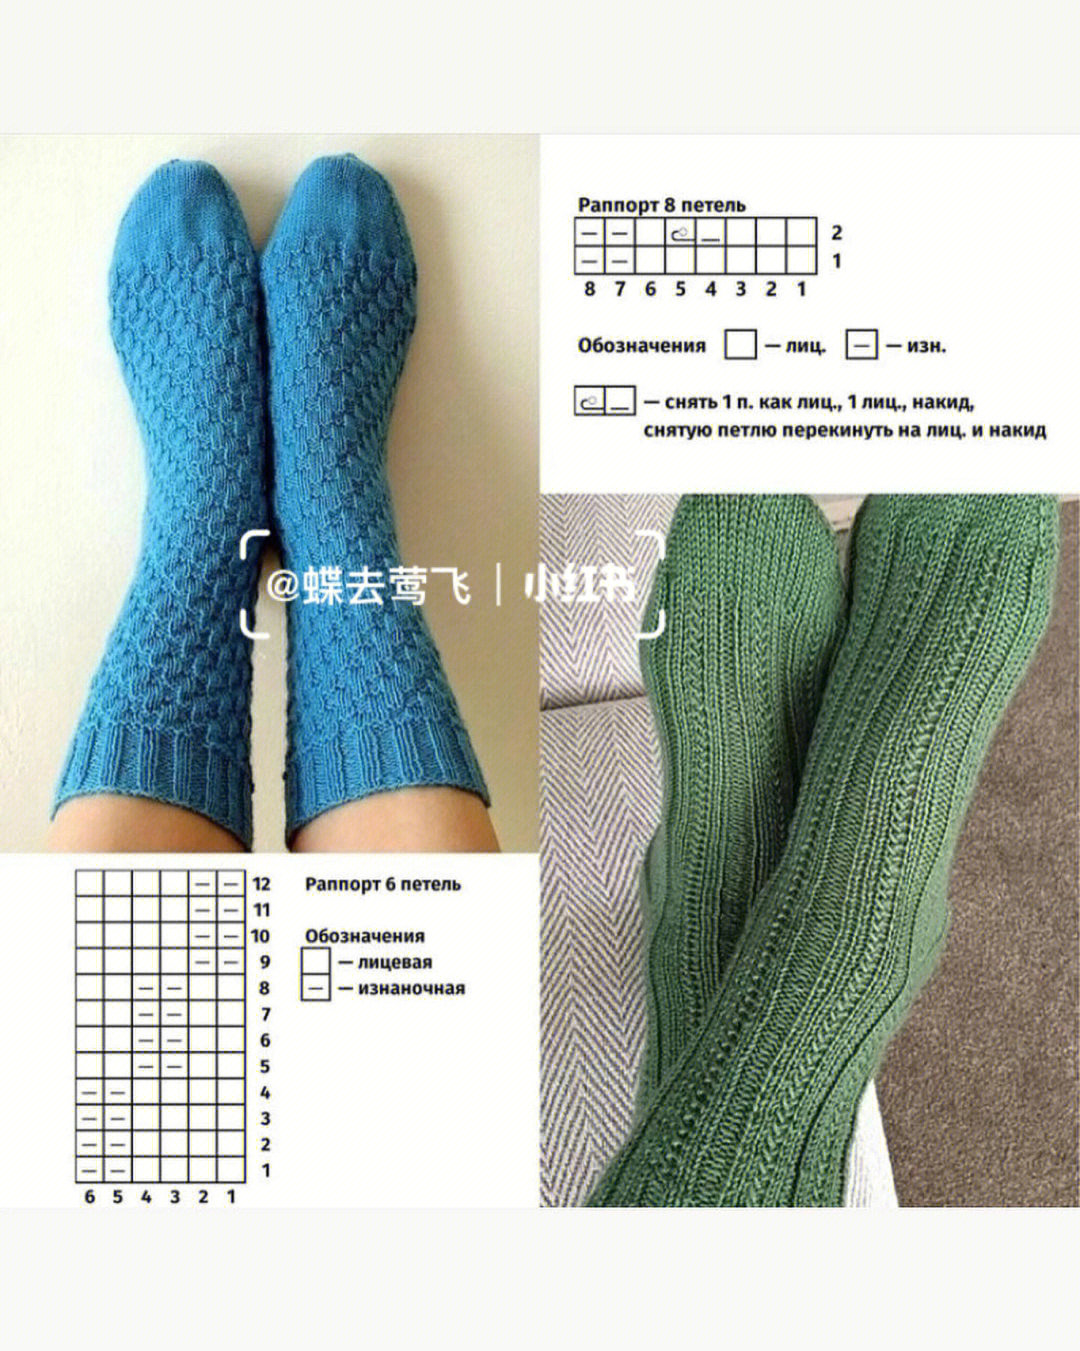 毛线地板袜的详细织法图片